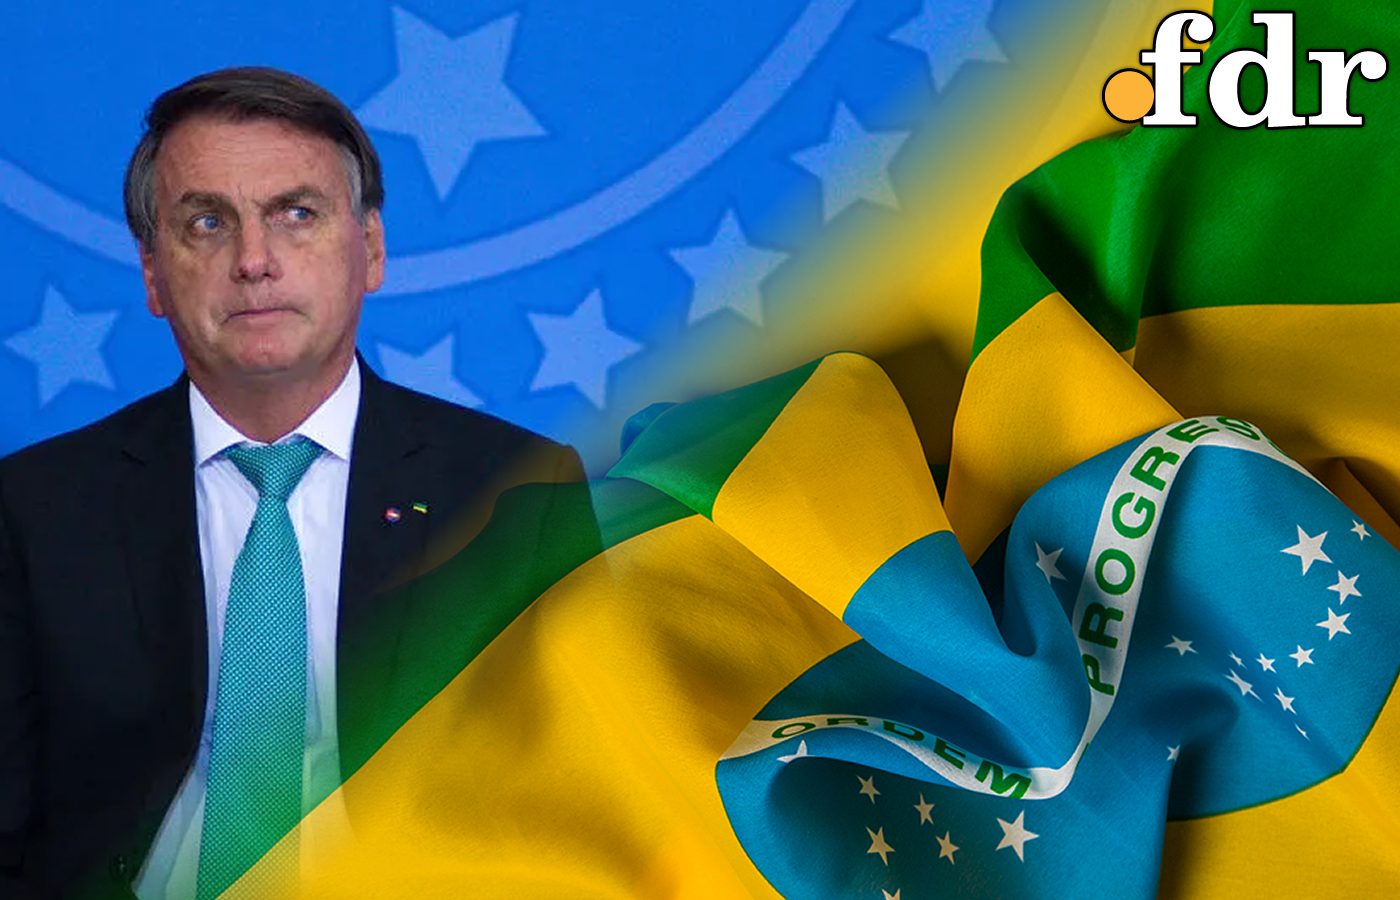 Mesmo criado por Bolsonaro, beneficiários do Auxílio Brasil preferem outro candidato a presidência (Imagem: FDR)